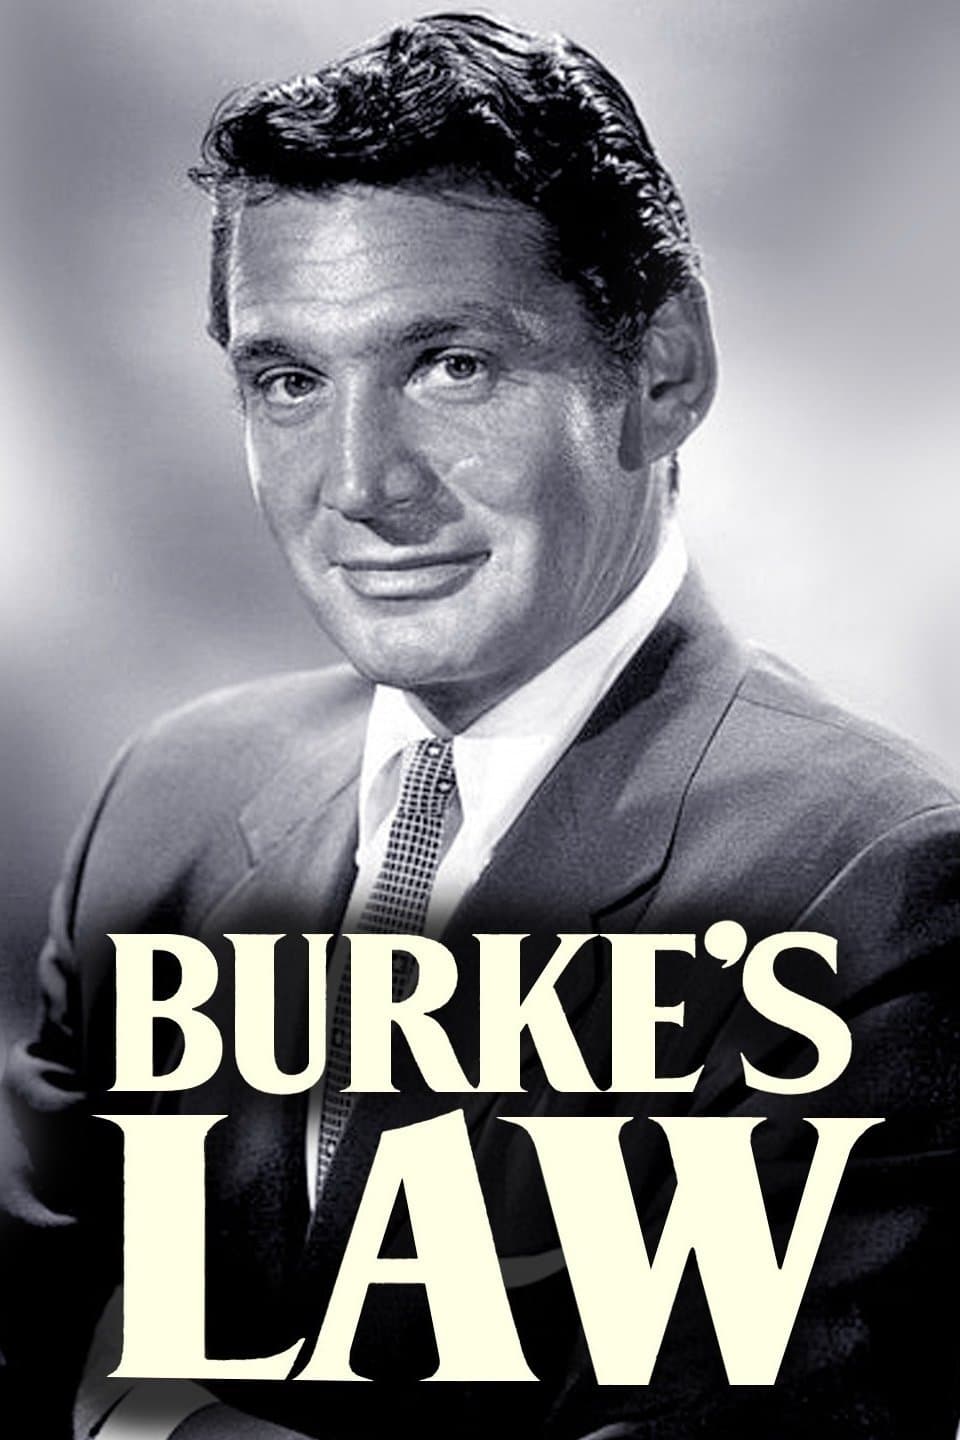 Burke's Law (1963)